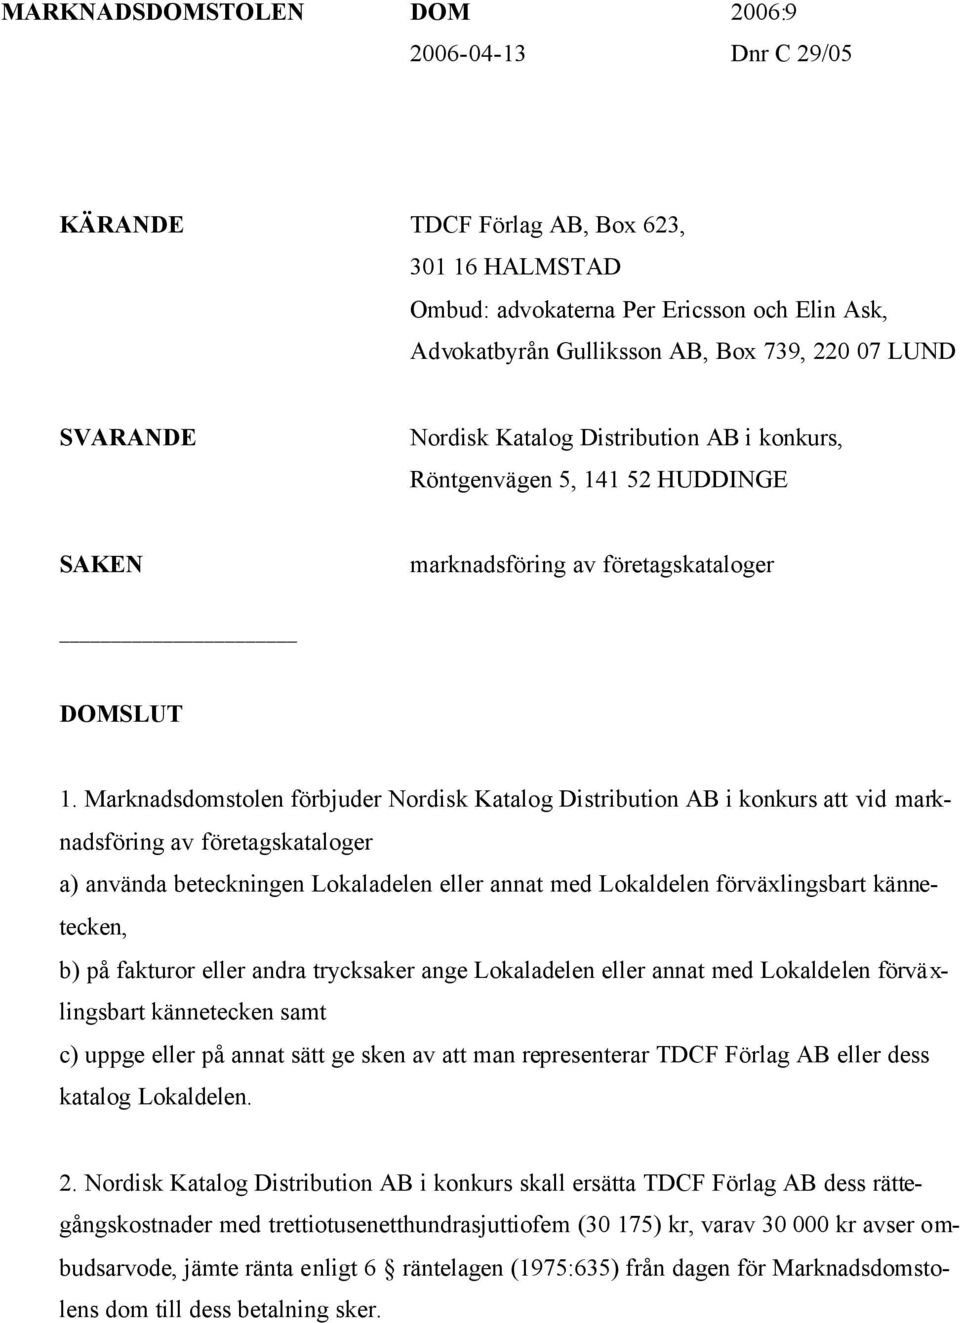 Marknadsdomstolen förbjuder Nordisk Katalog Distribution AB i konkurs att vid marknadsföring av företagskataloger a) använda beteckningen Lokaladelen eller annat med Lokaldelen förväxlingsbart